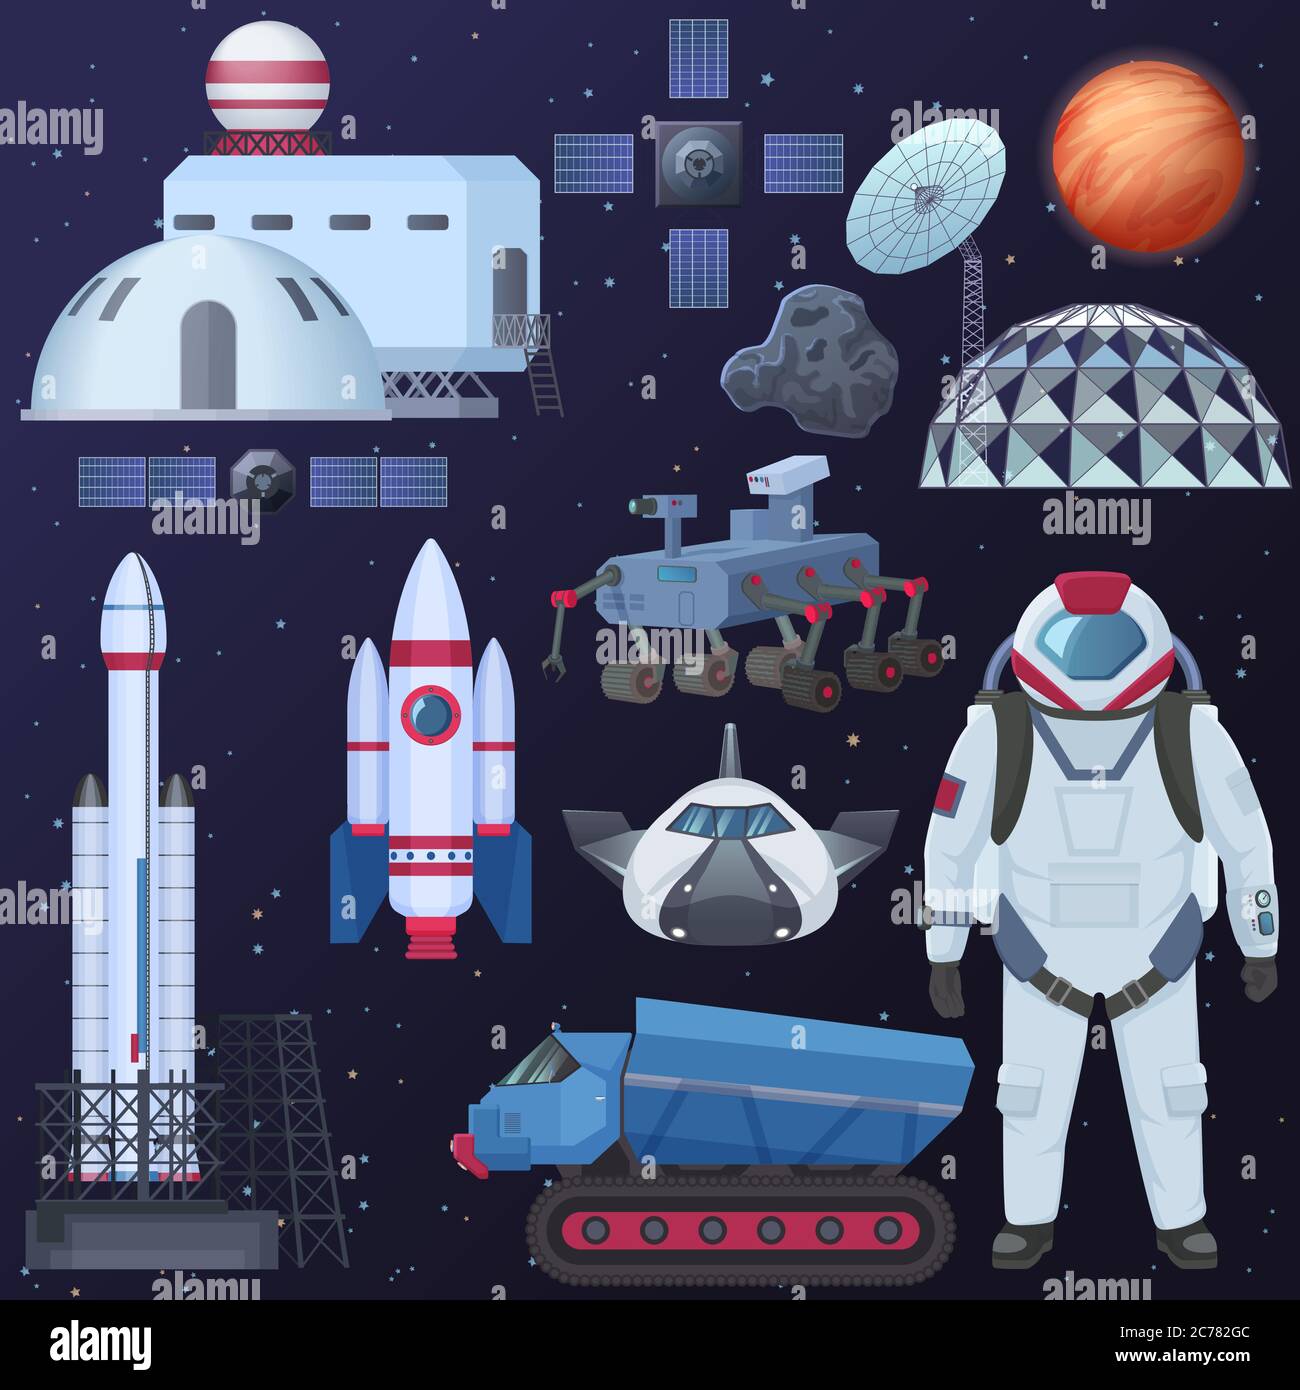 Ilustración vectorial de diferentes elementos de naves espaciales, astronauta en los trajes espaciales, edificios de colonización, nave espacial satelital, cohete y mars rover Ilustración del Vector